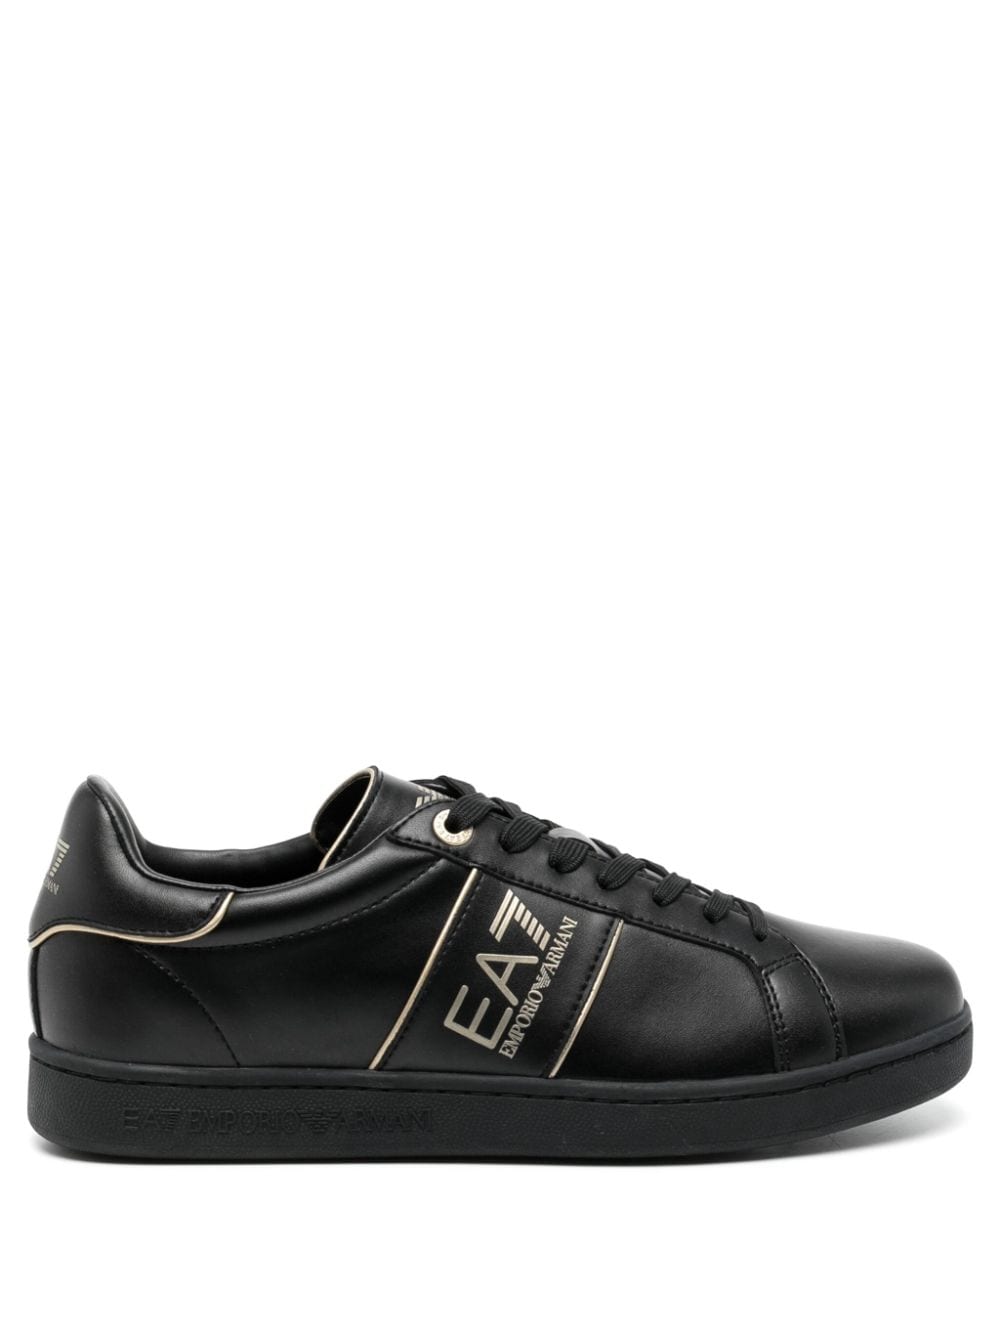 Ea7 Emporio Armani EA7 Classic leather sneakers - Black von Ea7 Emporio Armani